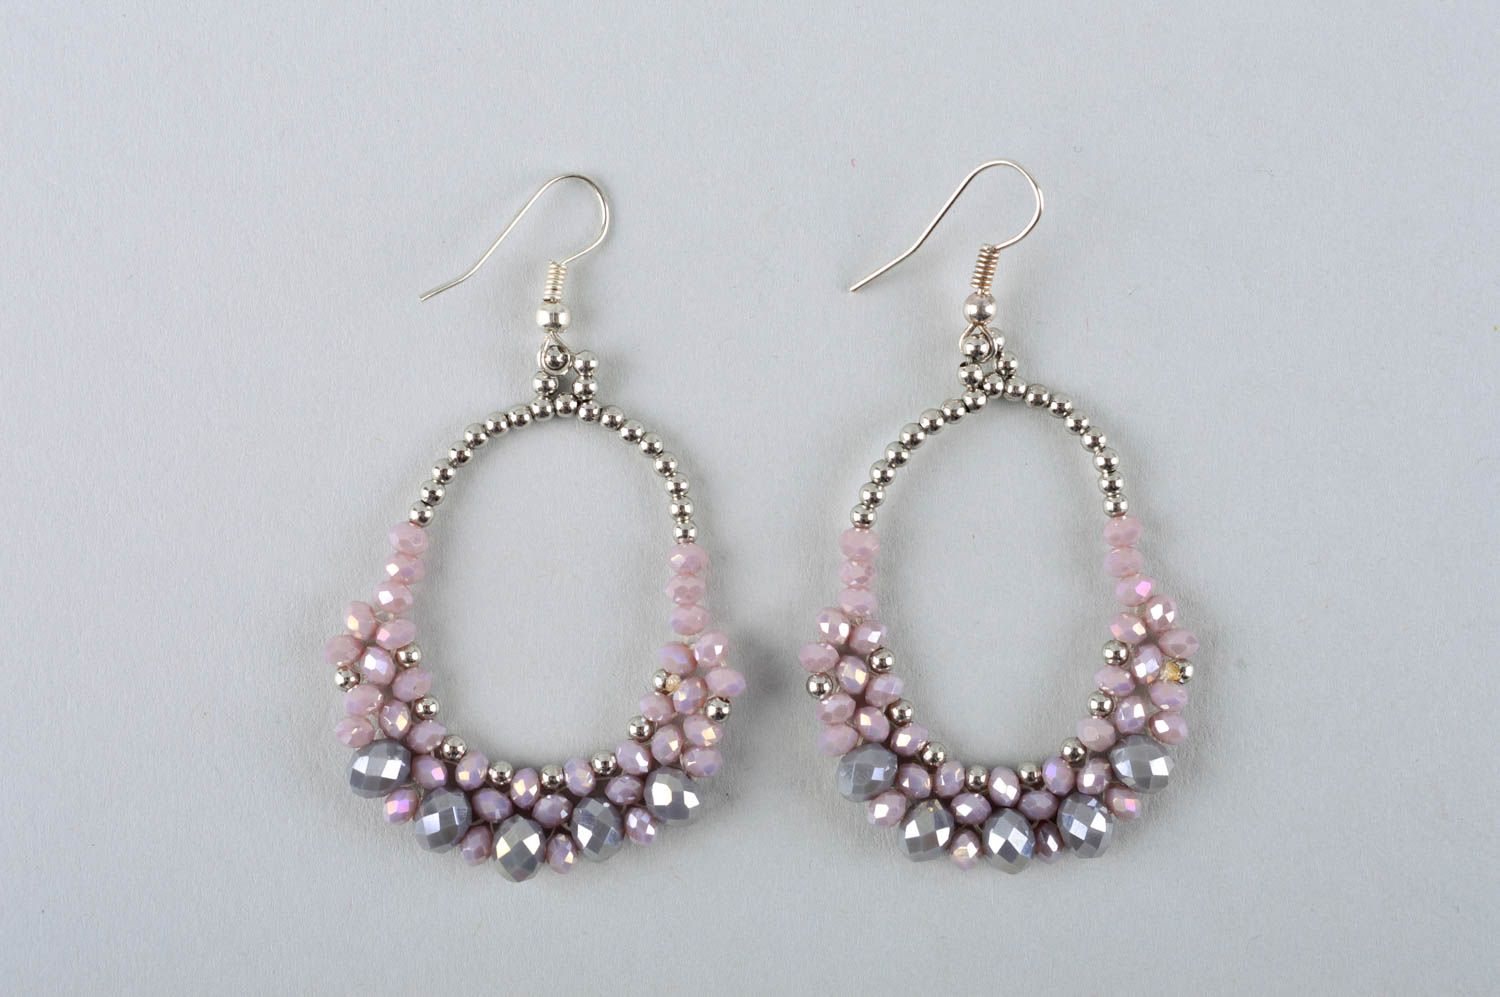 Handmade jewellery stylish earrings accessories for women cute earrings photo 1